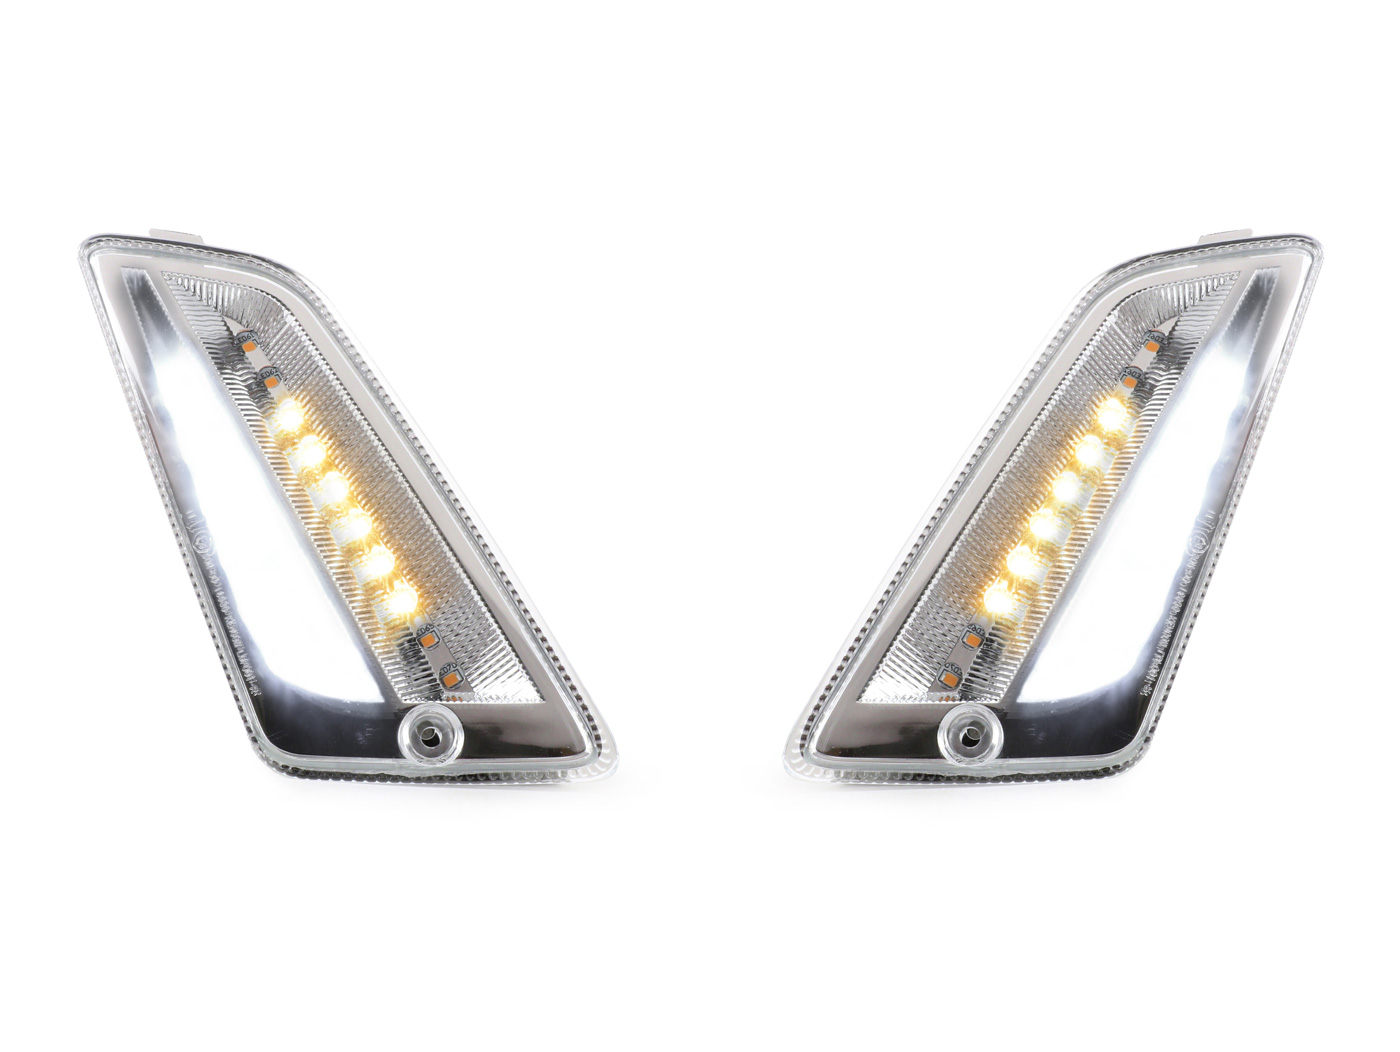 Relais de clignotant LED, 12V 3 broches réglable Relais de clignotant LED  Clignotant lumineux Compatible avec l'automobile